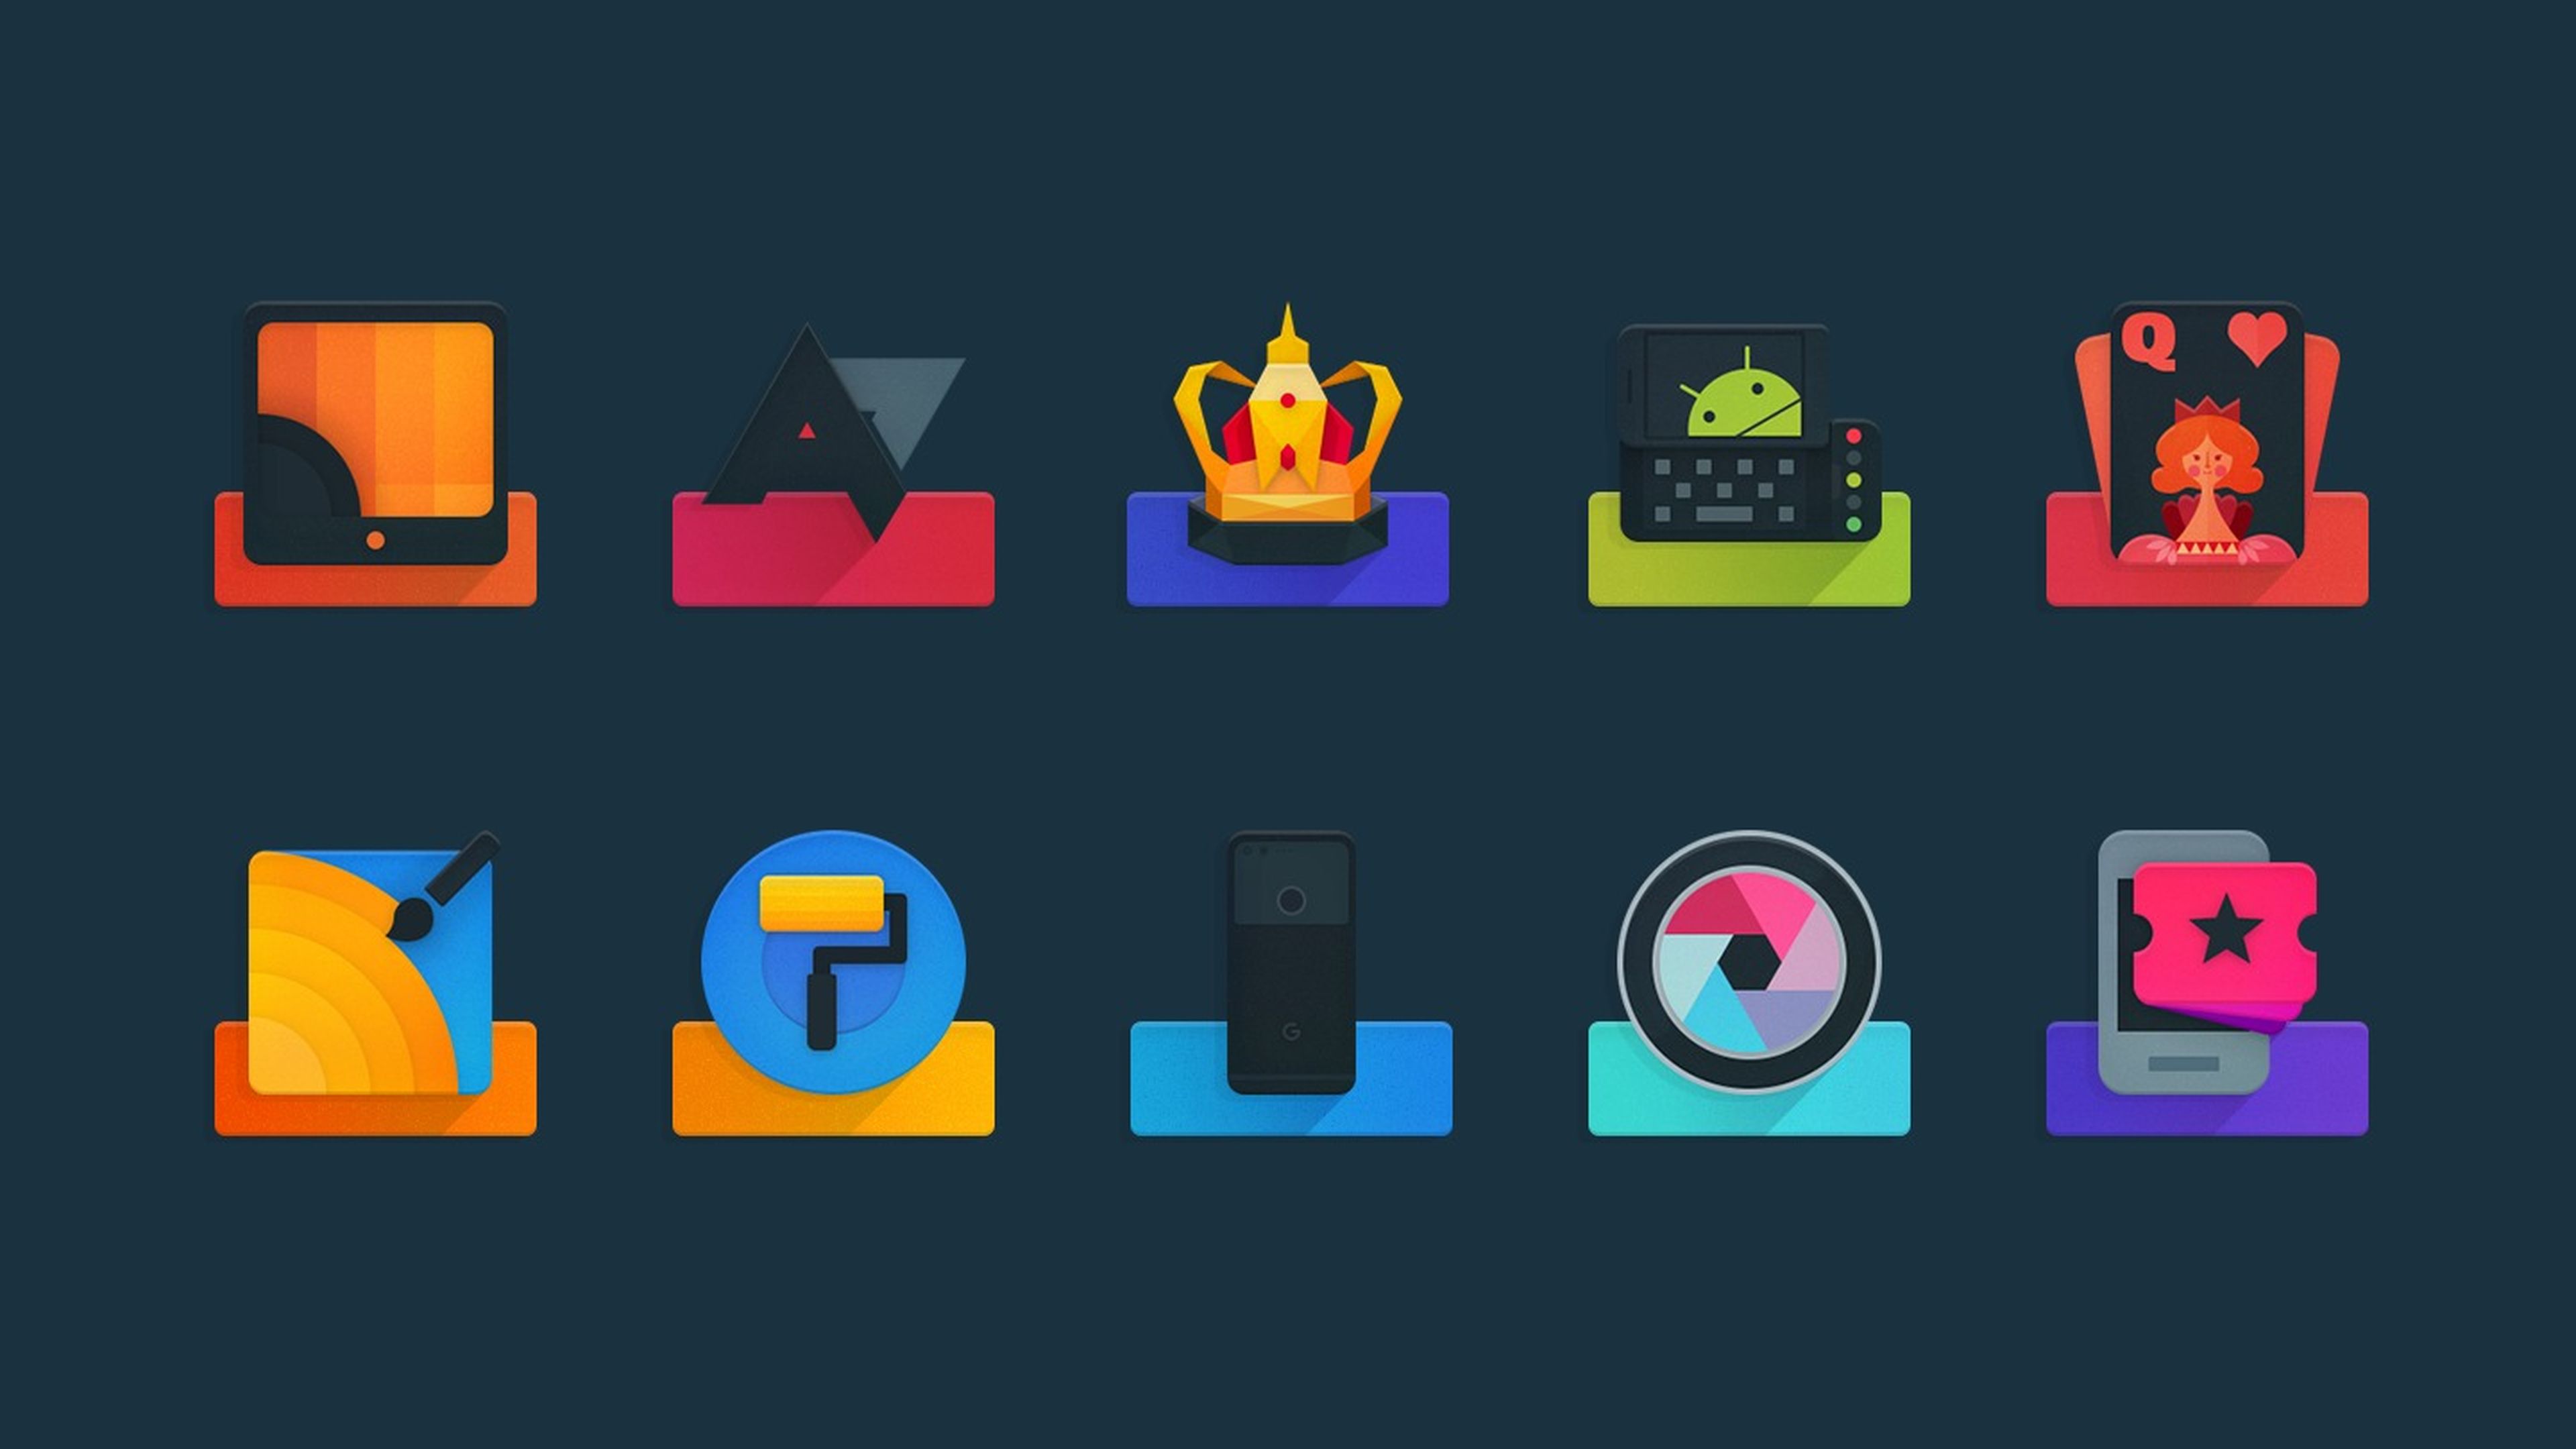 Personaliza tu teléfono Android: los mejores packs de iconos para cambiar el estilo de tu móvil